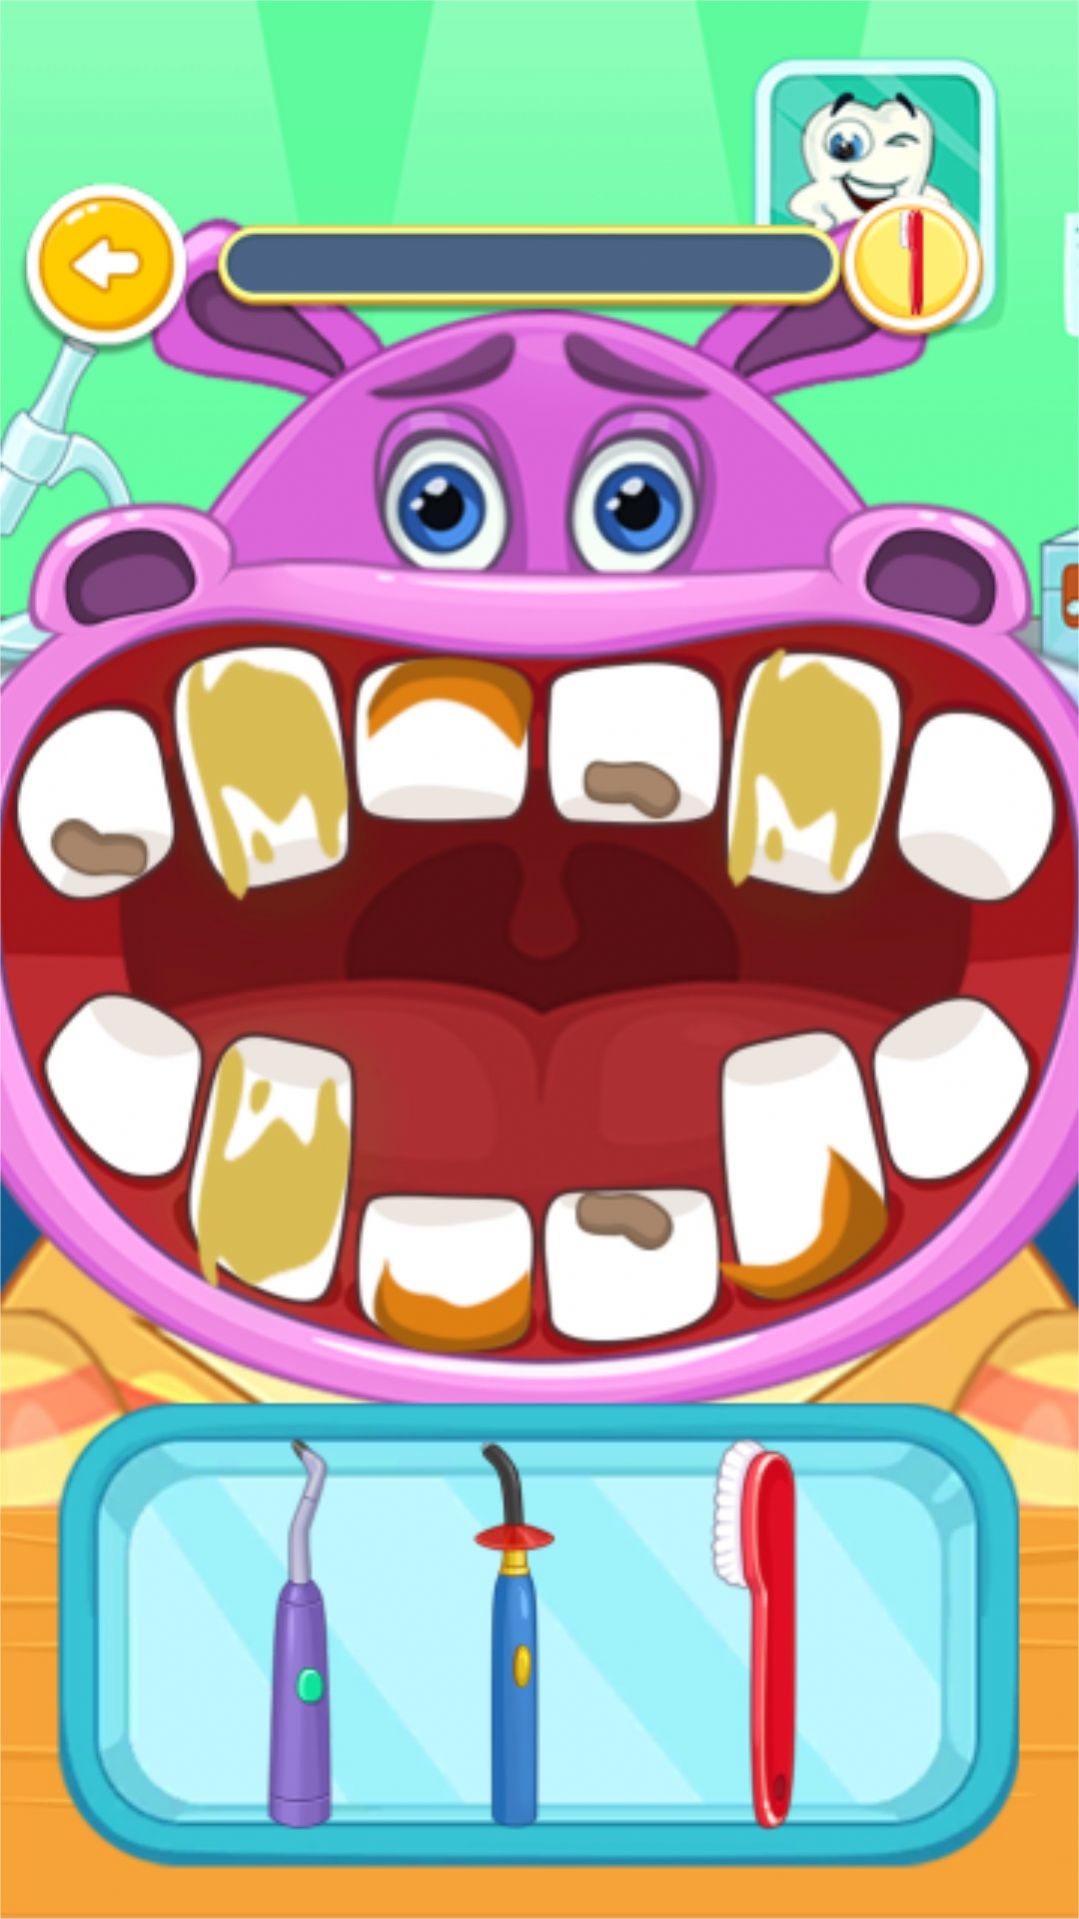 牙医小课堂游戏下载,牙医小课堂游戏app官方版 v1.0